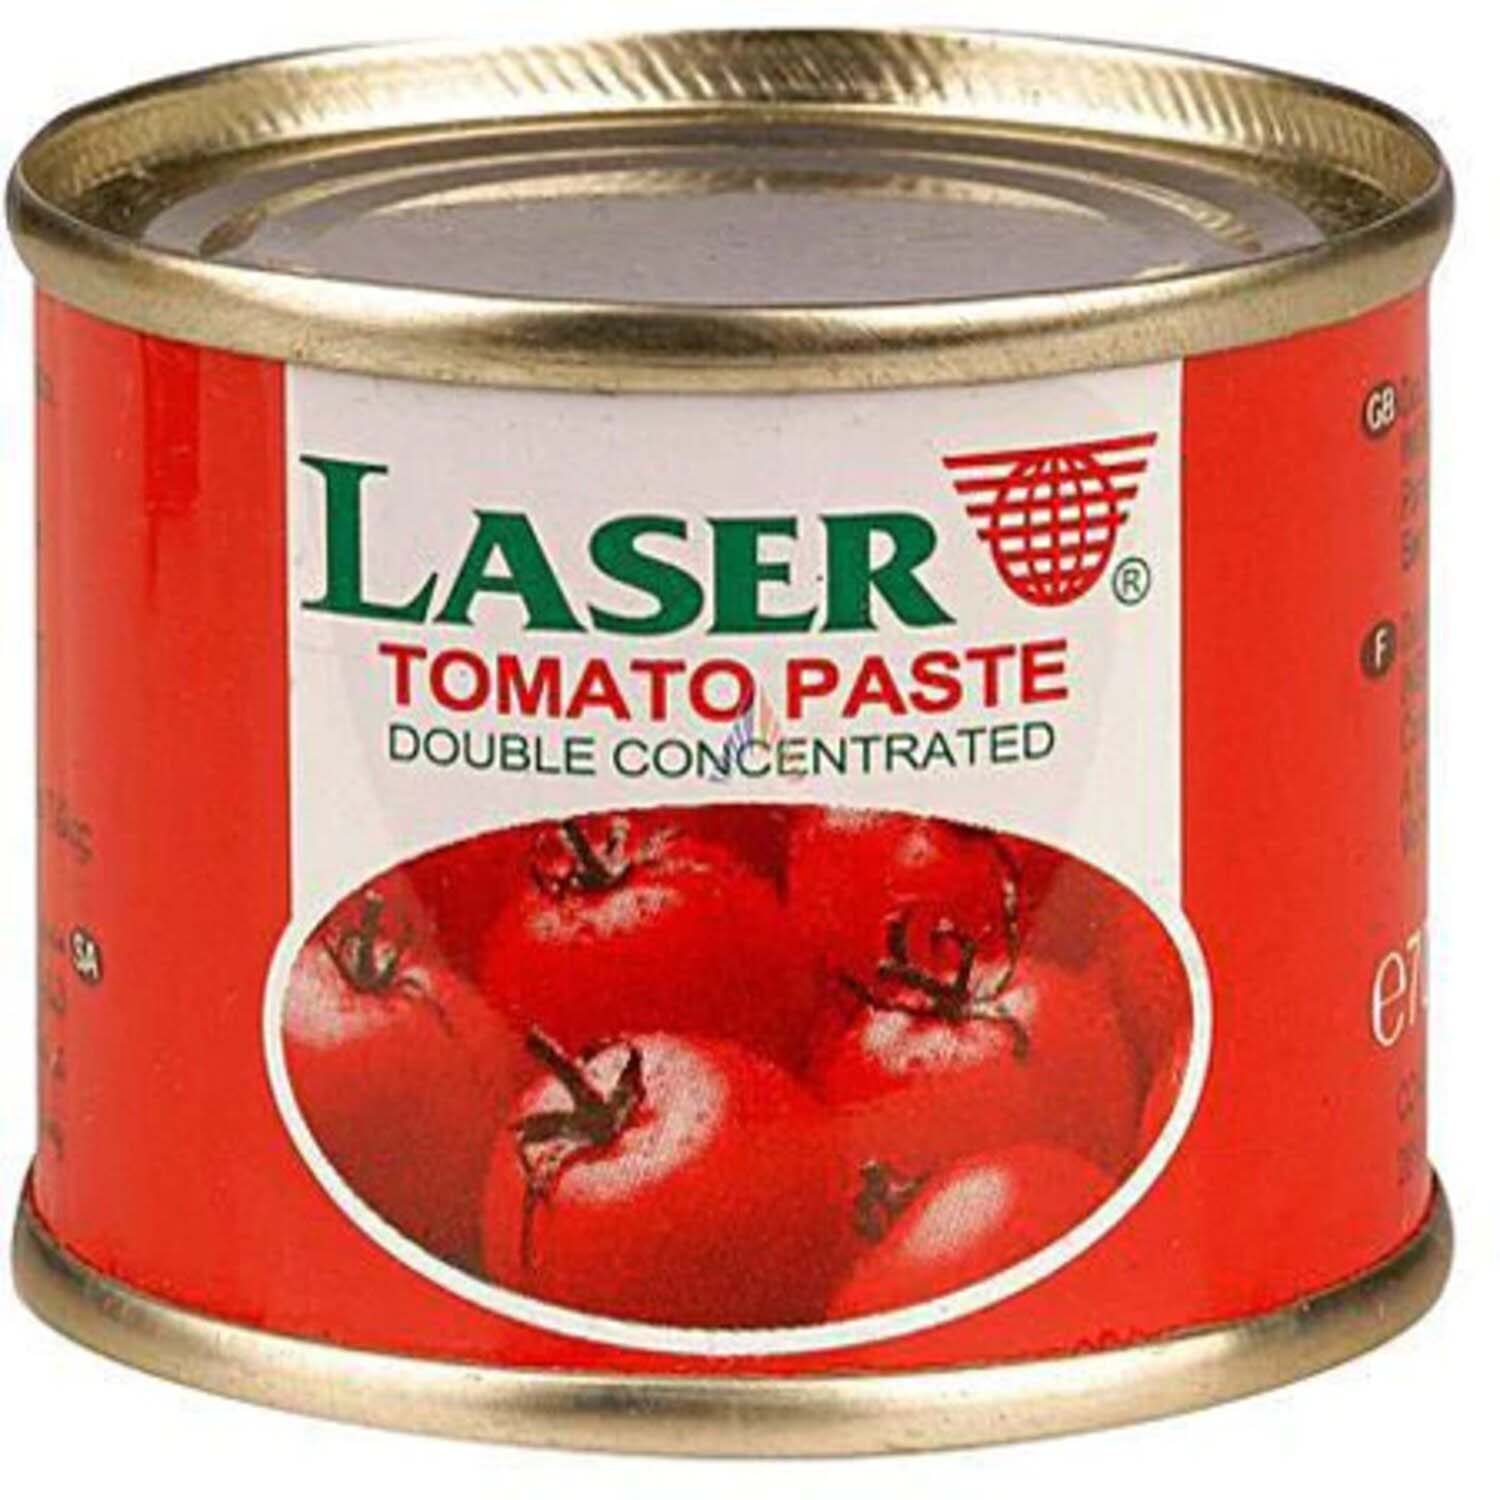 Offer Laser tomato paste 70g X 4 pcs